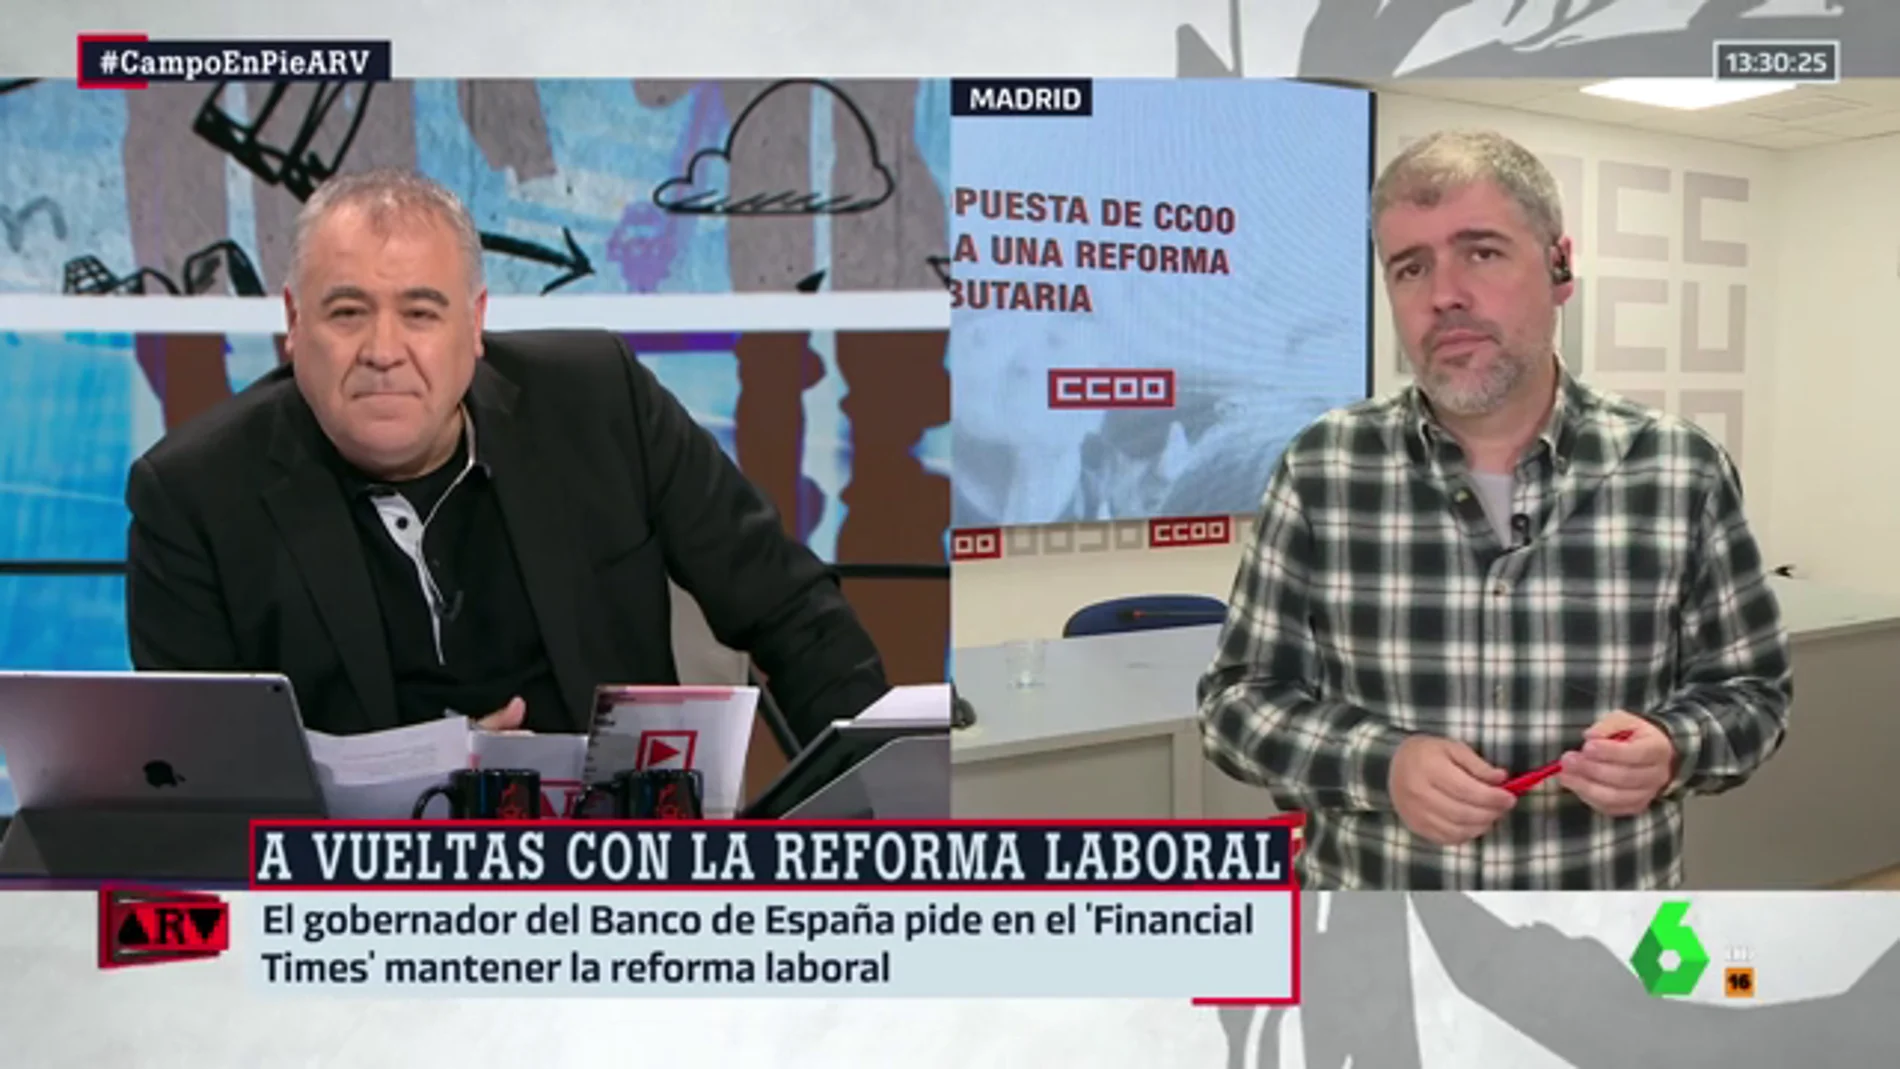 Unai Sordo responde al gobernador del Banco de España sobre la reforma laboral: "Puede opinar lo que desee"